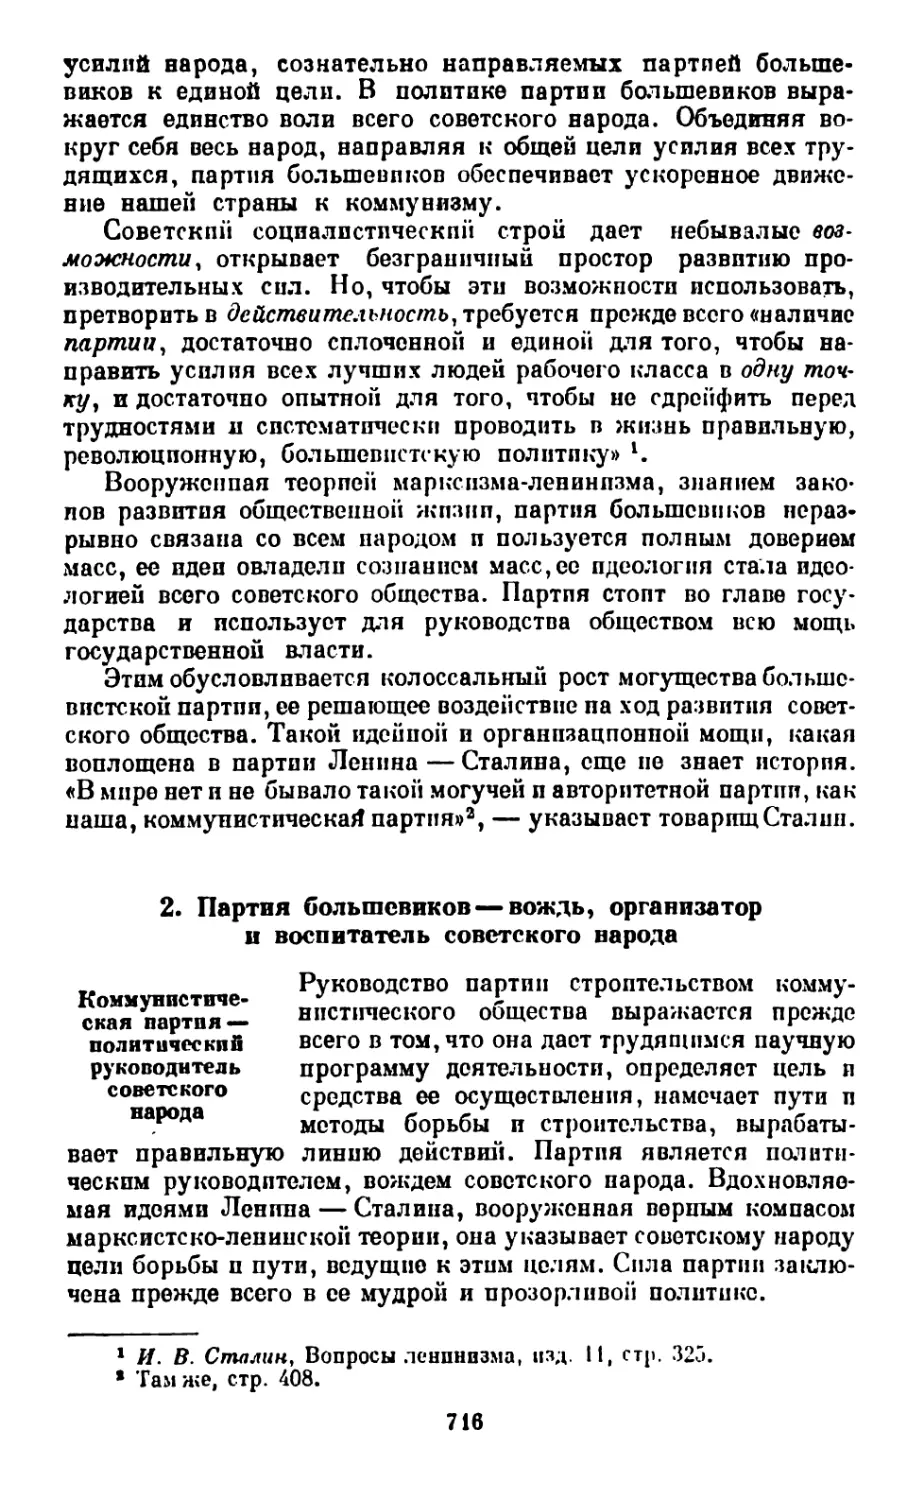 2. Партия большевиков — вождь, организатор и воспитатель советского народа